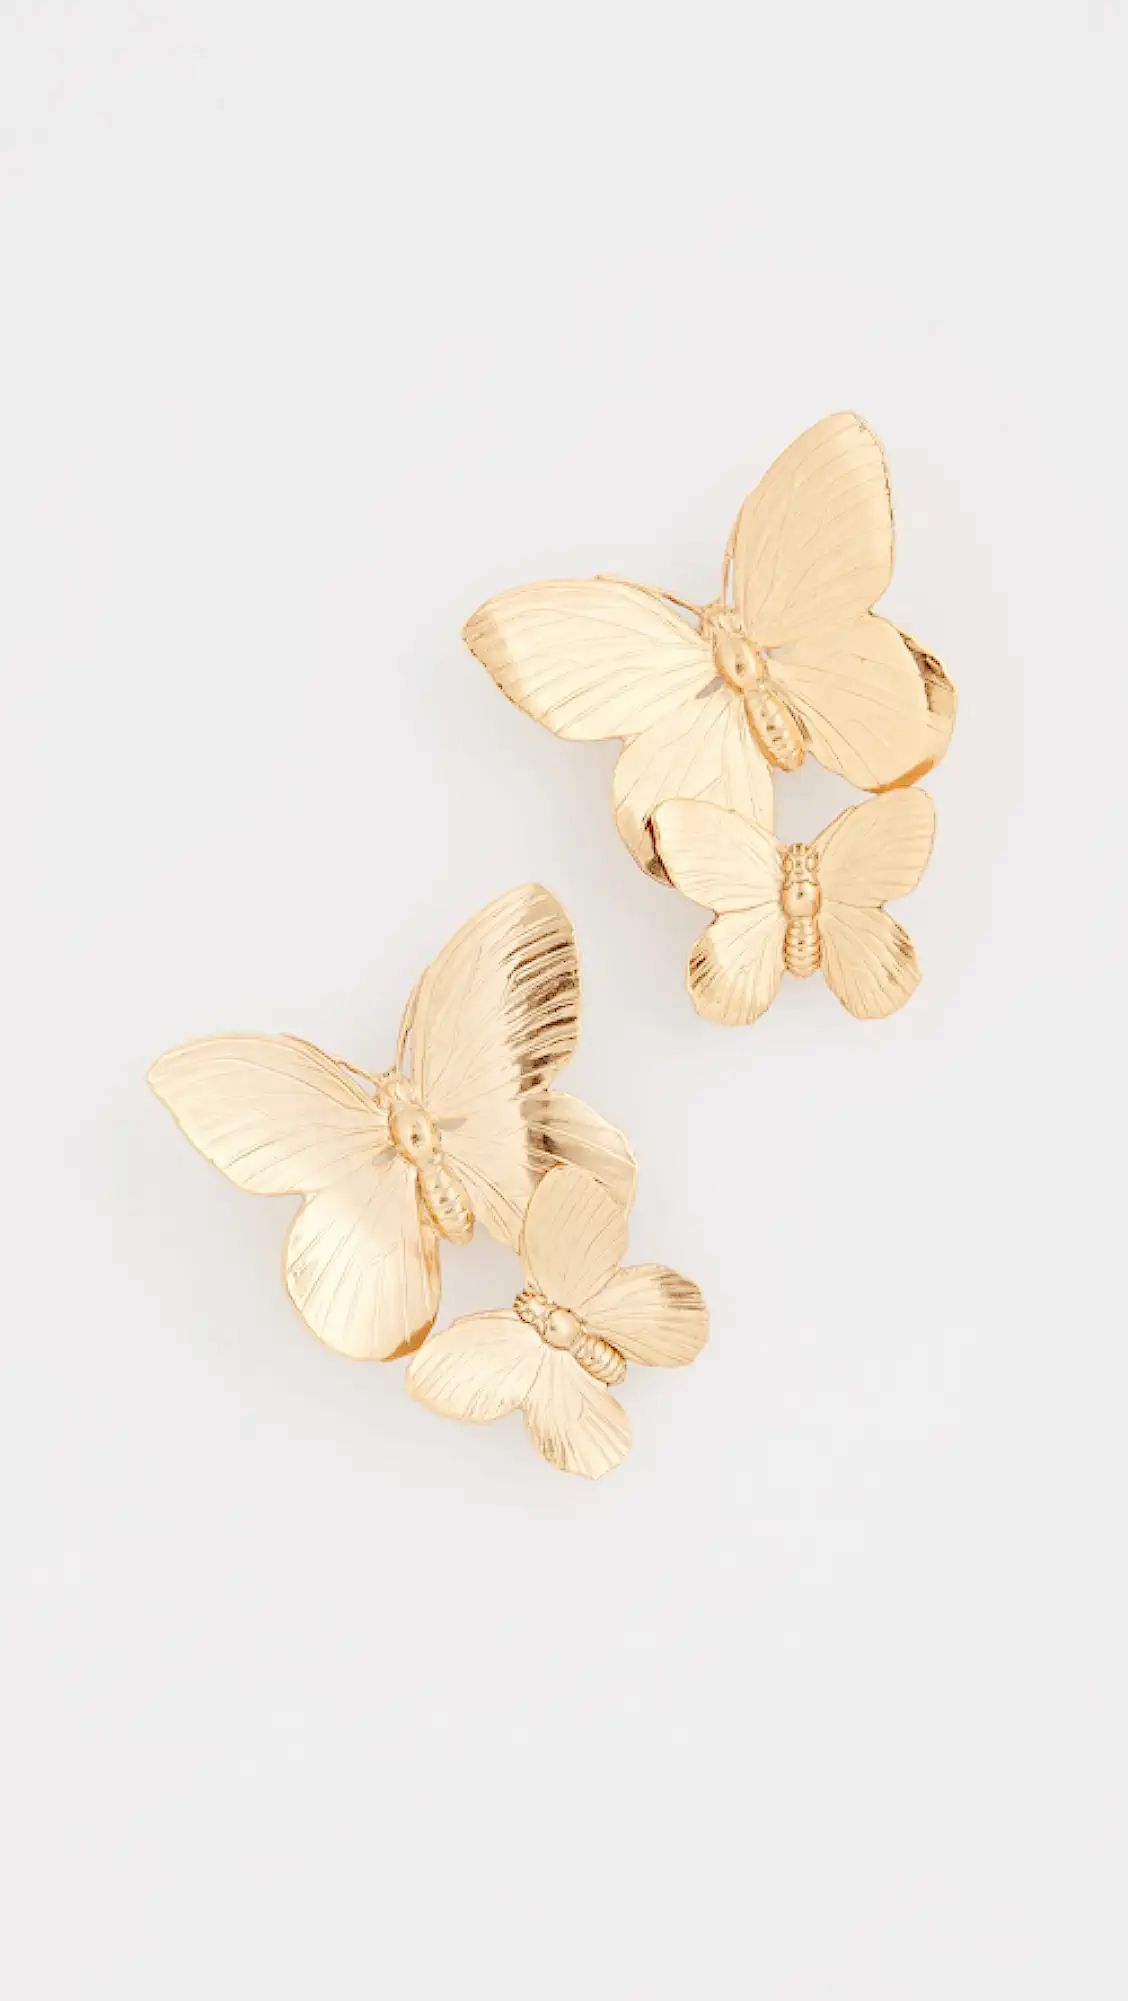 Papillon Earrings | Shopbop